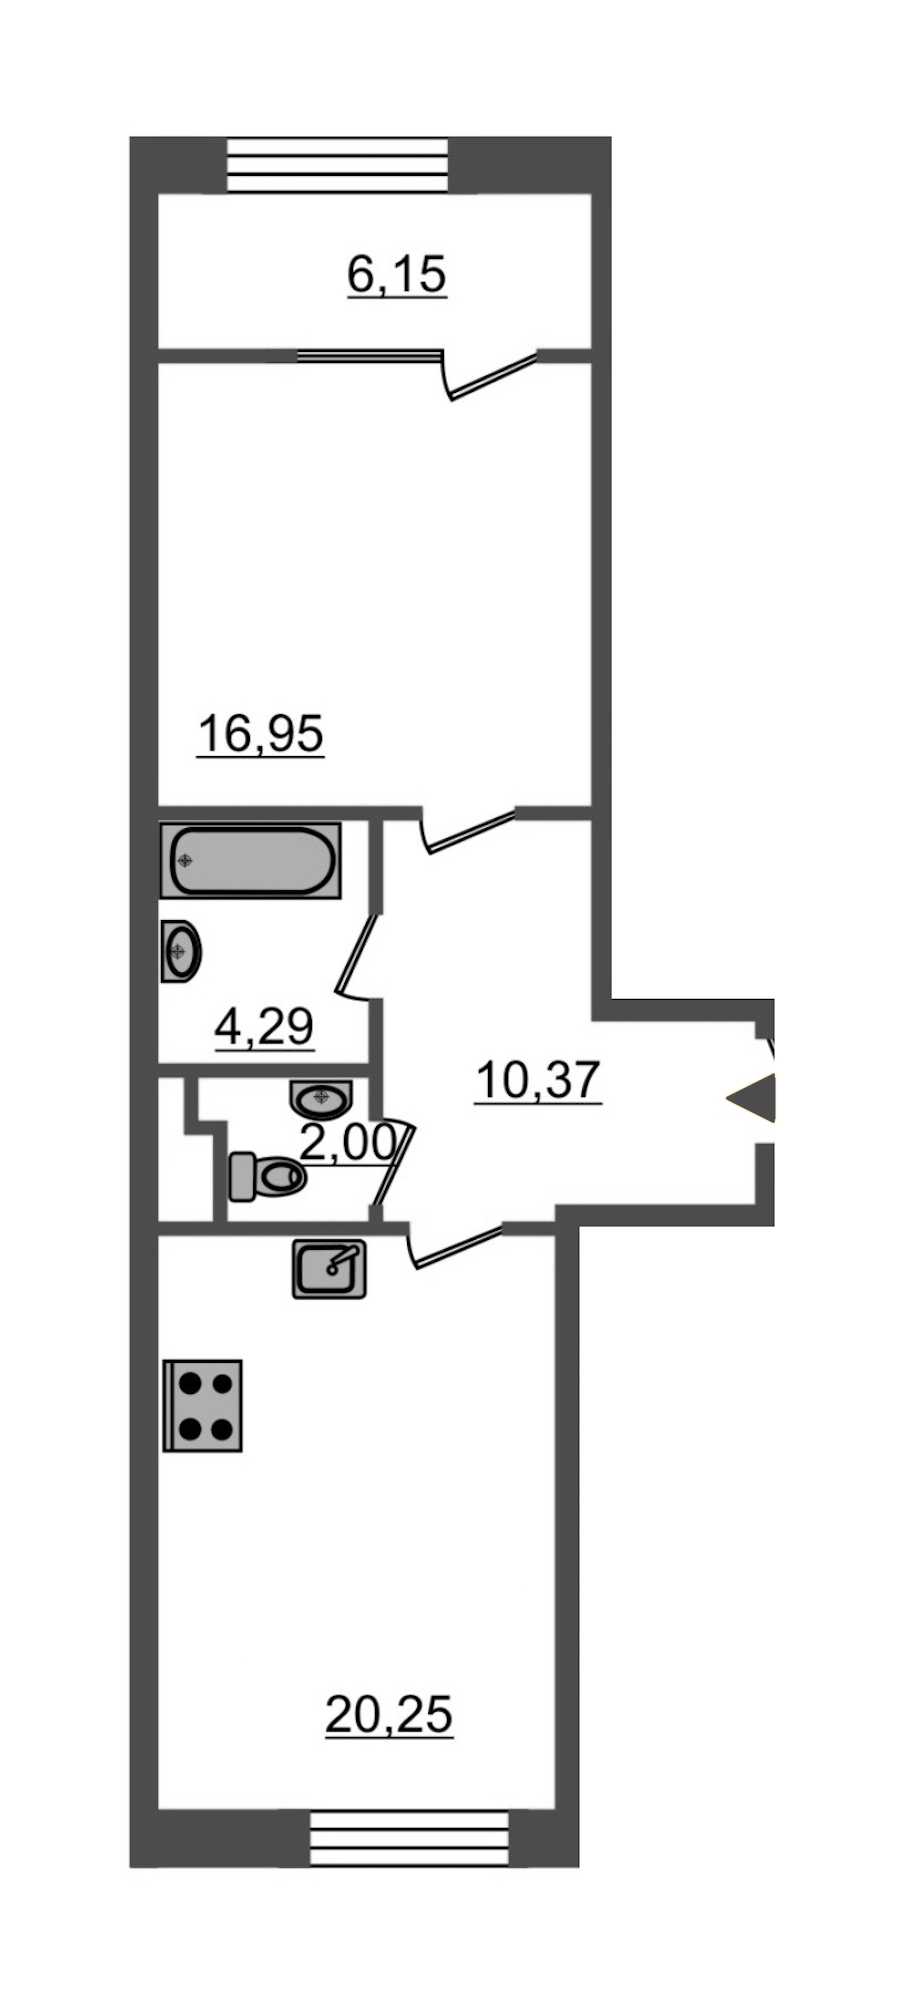 Однокомнатная квартира в Эталон ЛенСпецСМУ: площадь 59.7 м2 , этаж: 7 – купить в Санкт-Петербурге